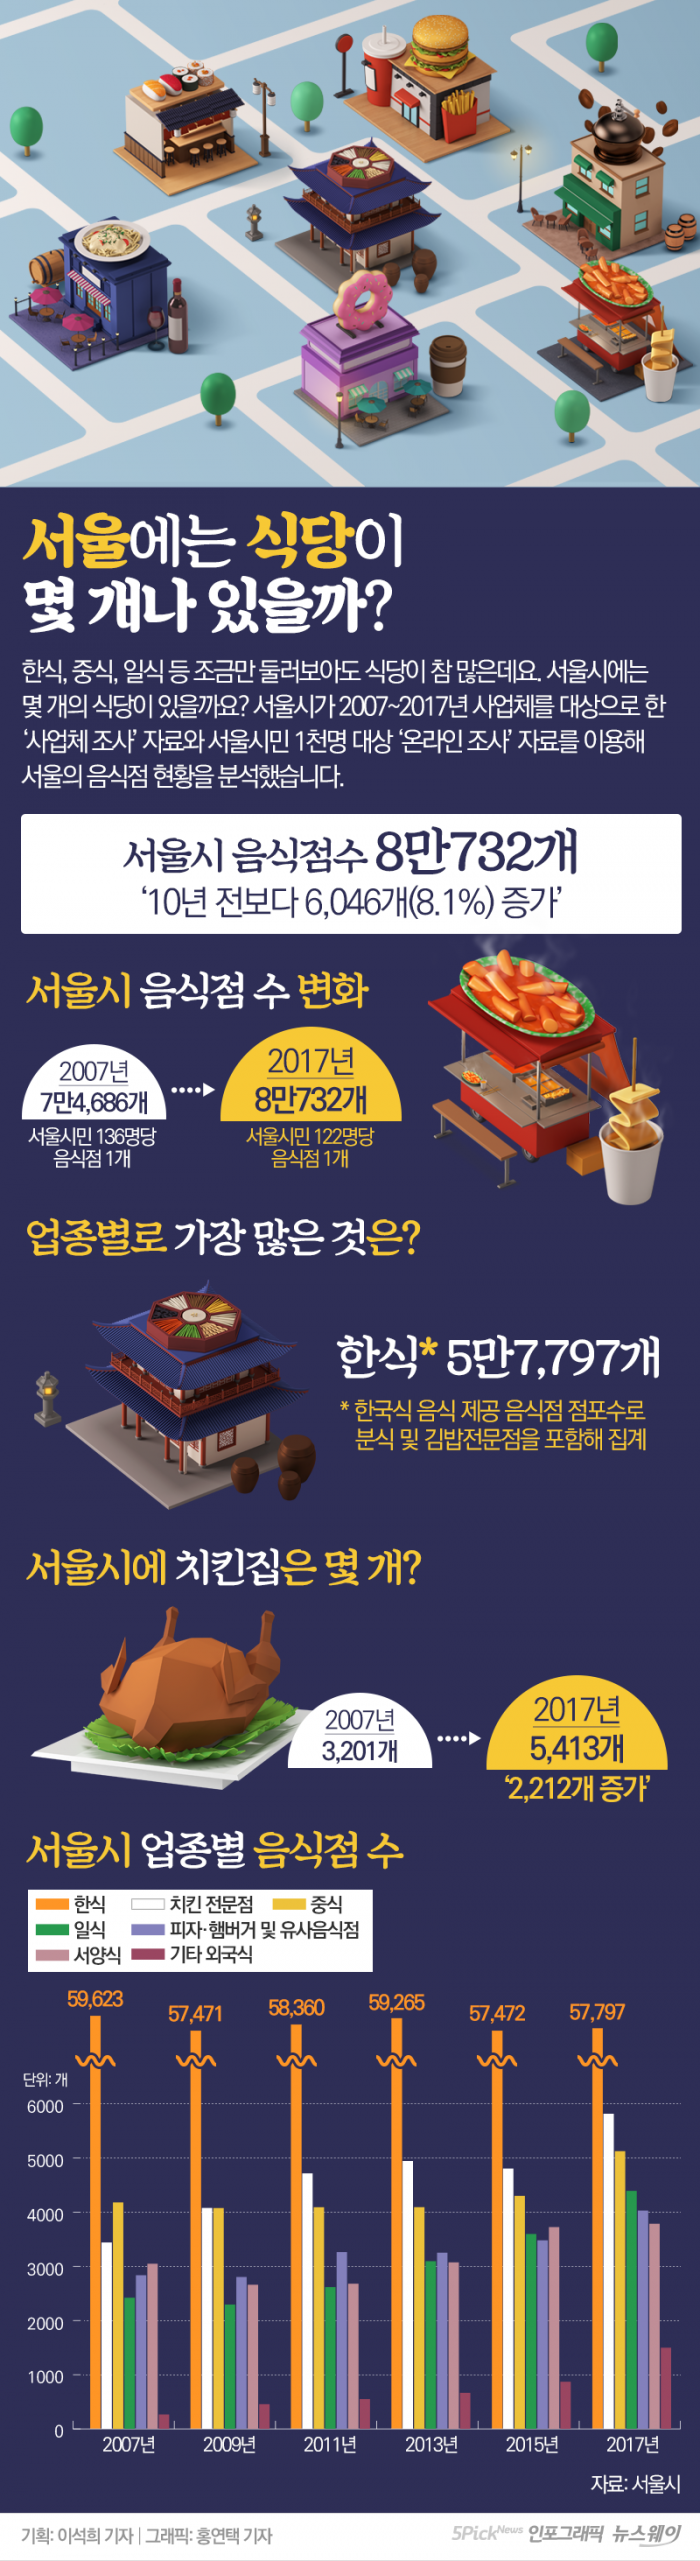 서울에는 식당이 몇 개나 있을까? 기사의 사진